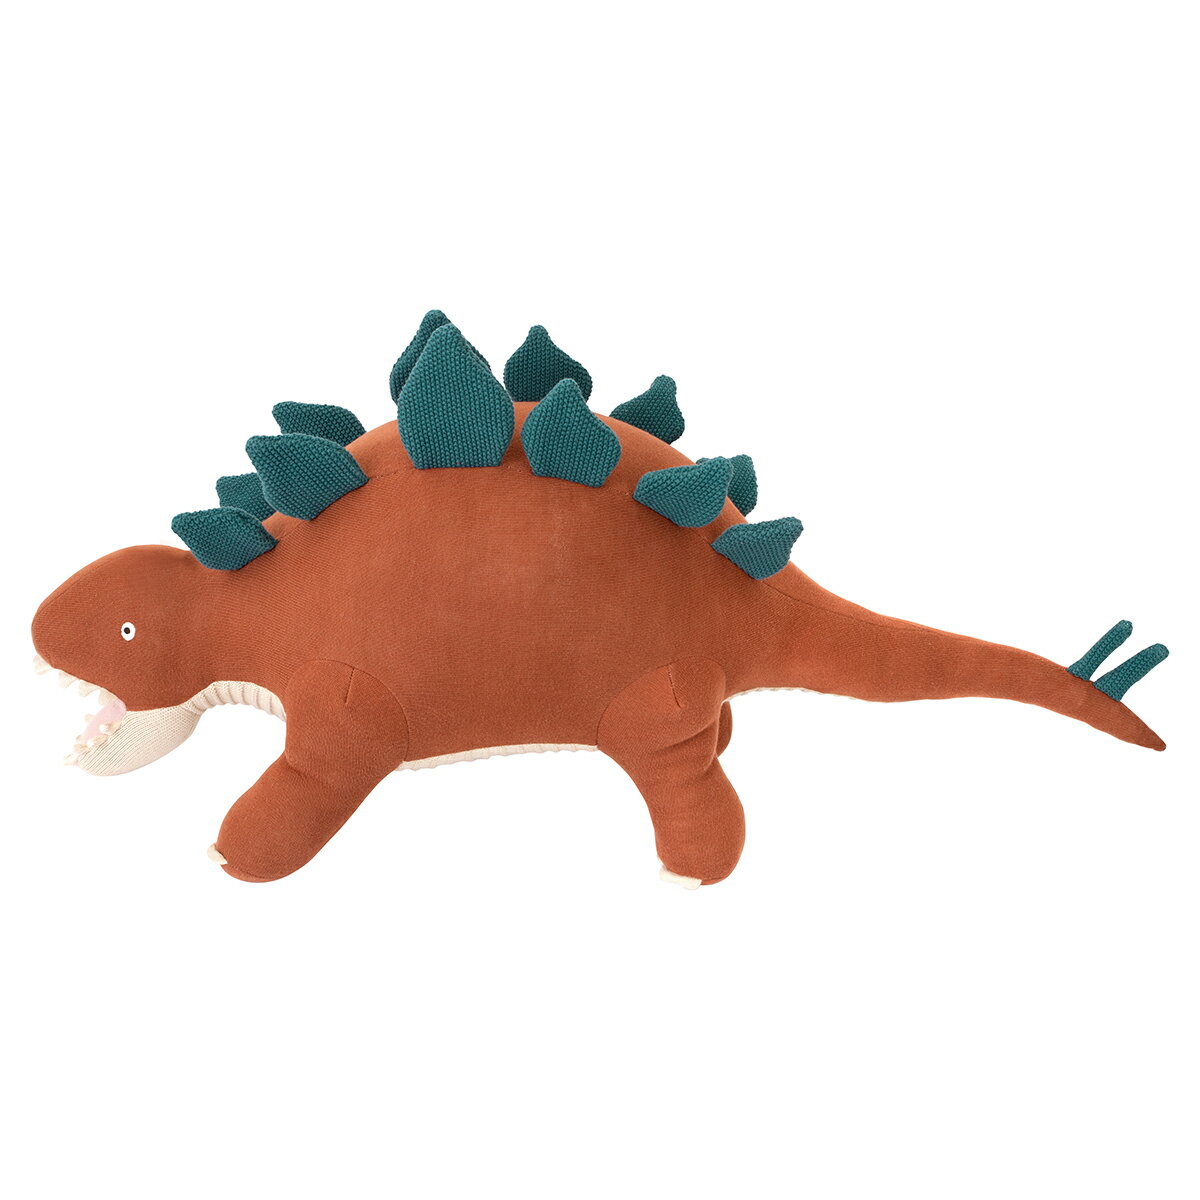 クッション 恐竜 ぬいぐるみ Large Stegosaurus Knitted Toy Bruce 大きい 誕生日 誕生日会 プレゼント バースデーパーティ merimeri メリメリ 百貨店子供売り場で人気